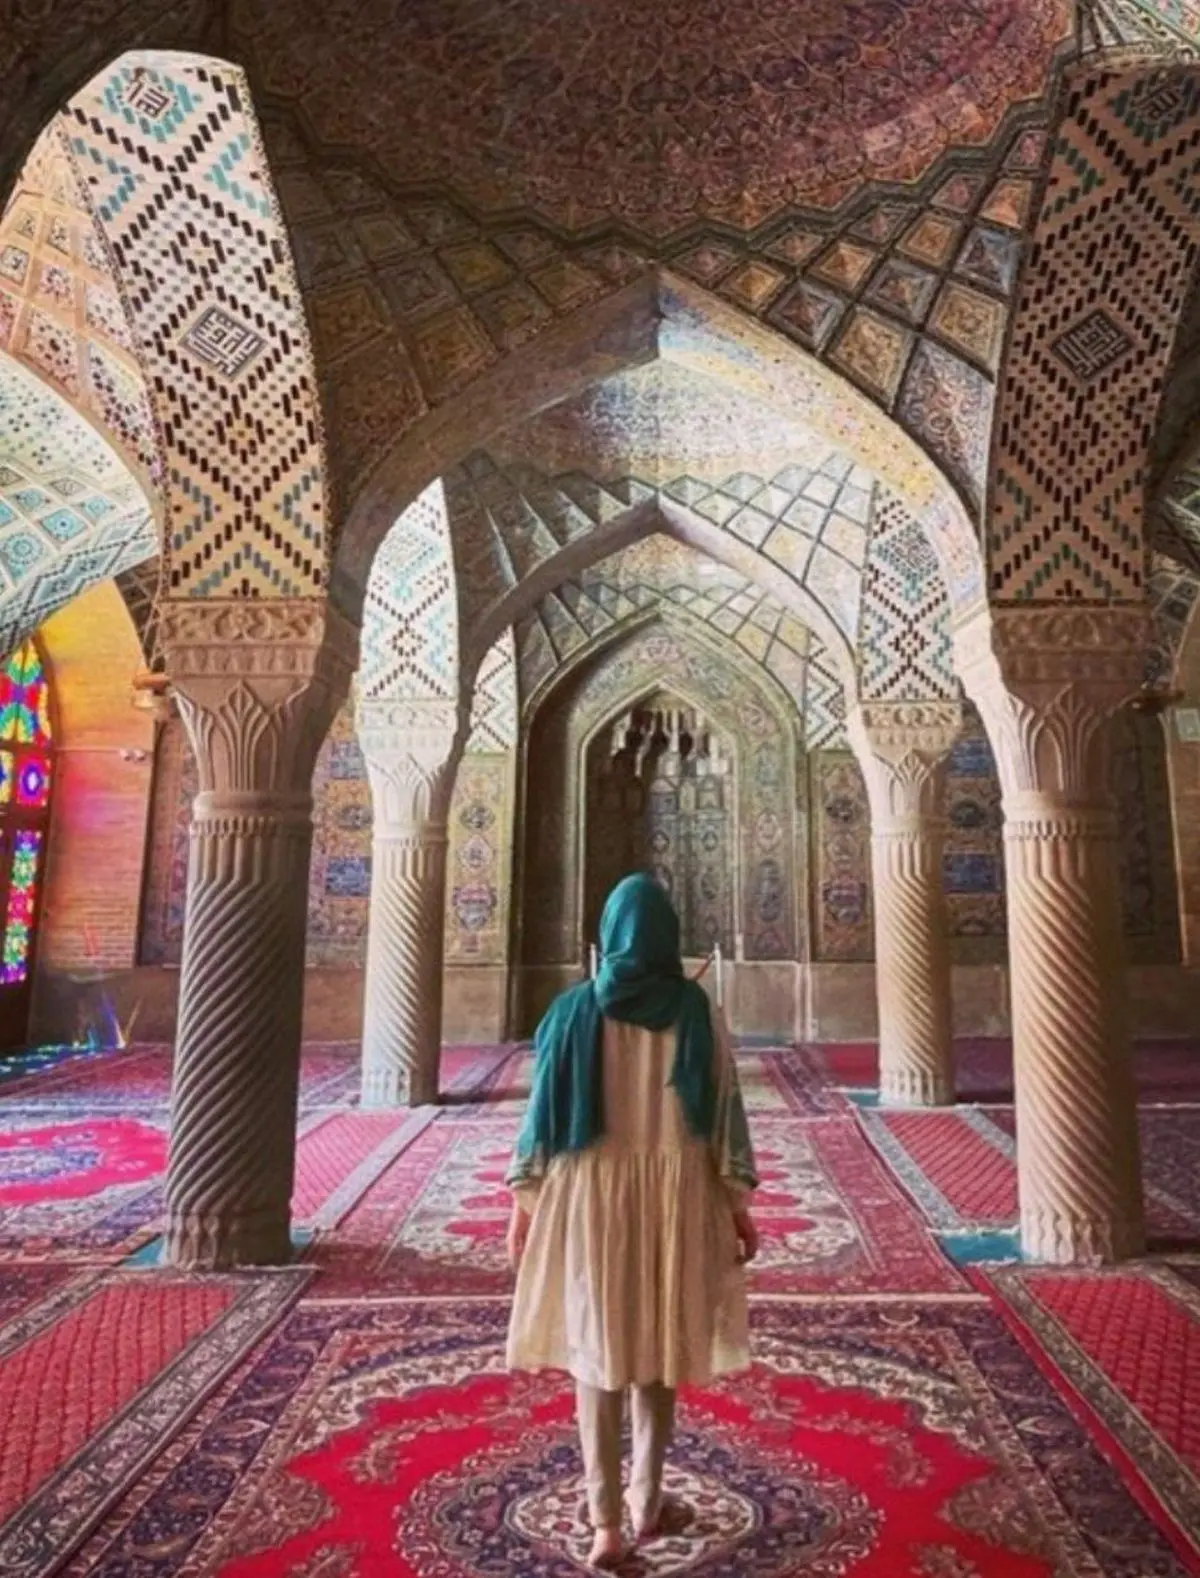 یک ممنوعیت جدید: عکاسی خانم ها بدون چادر در مسجد نصیرالملک شیراز ممنوع! | مامورانی برای تذکر در مسجد گذاشته شد